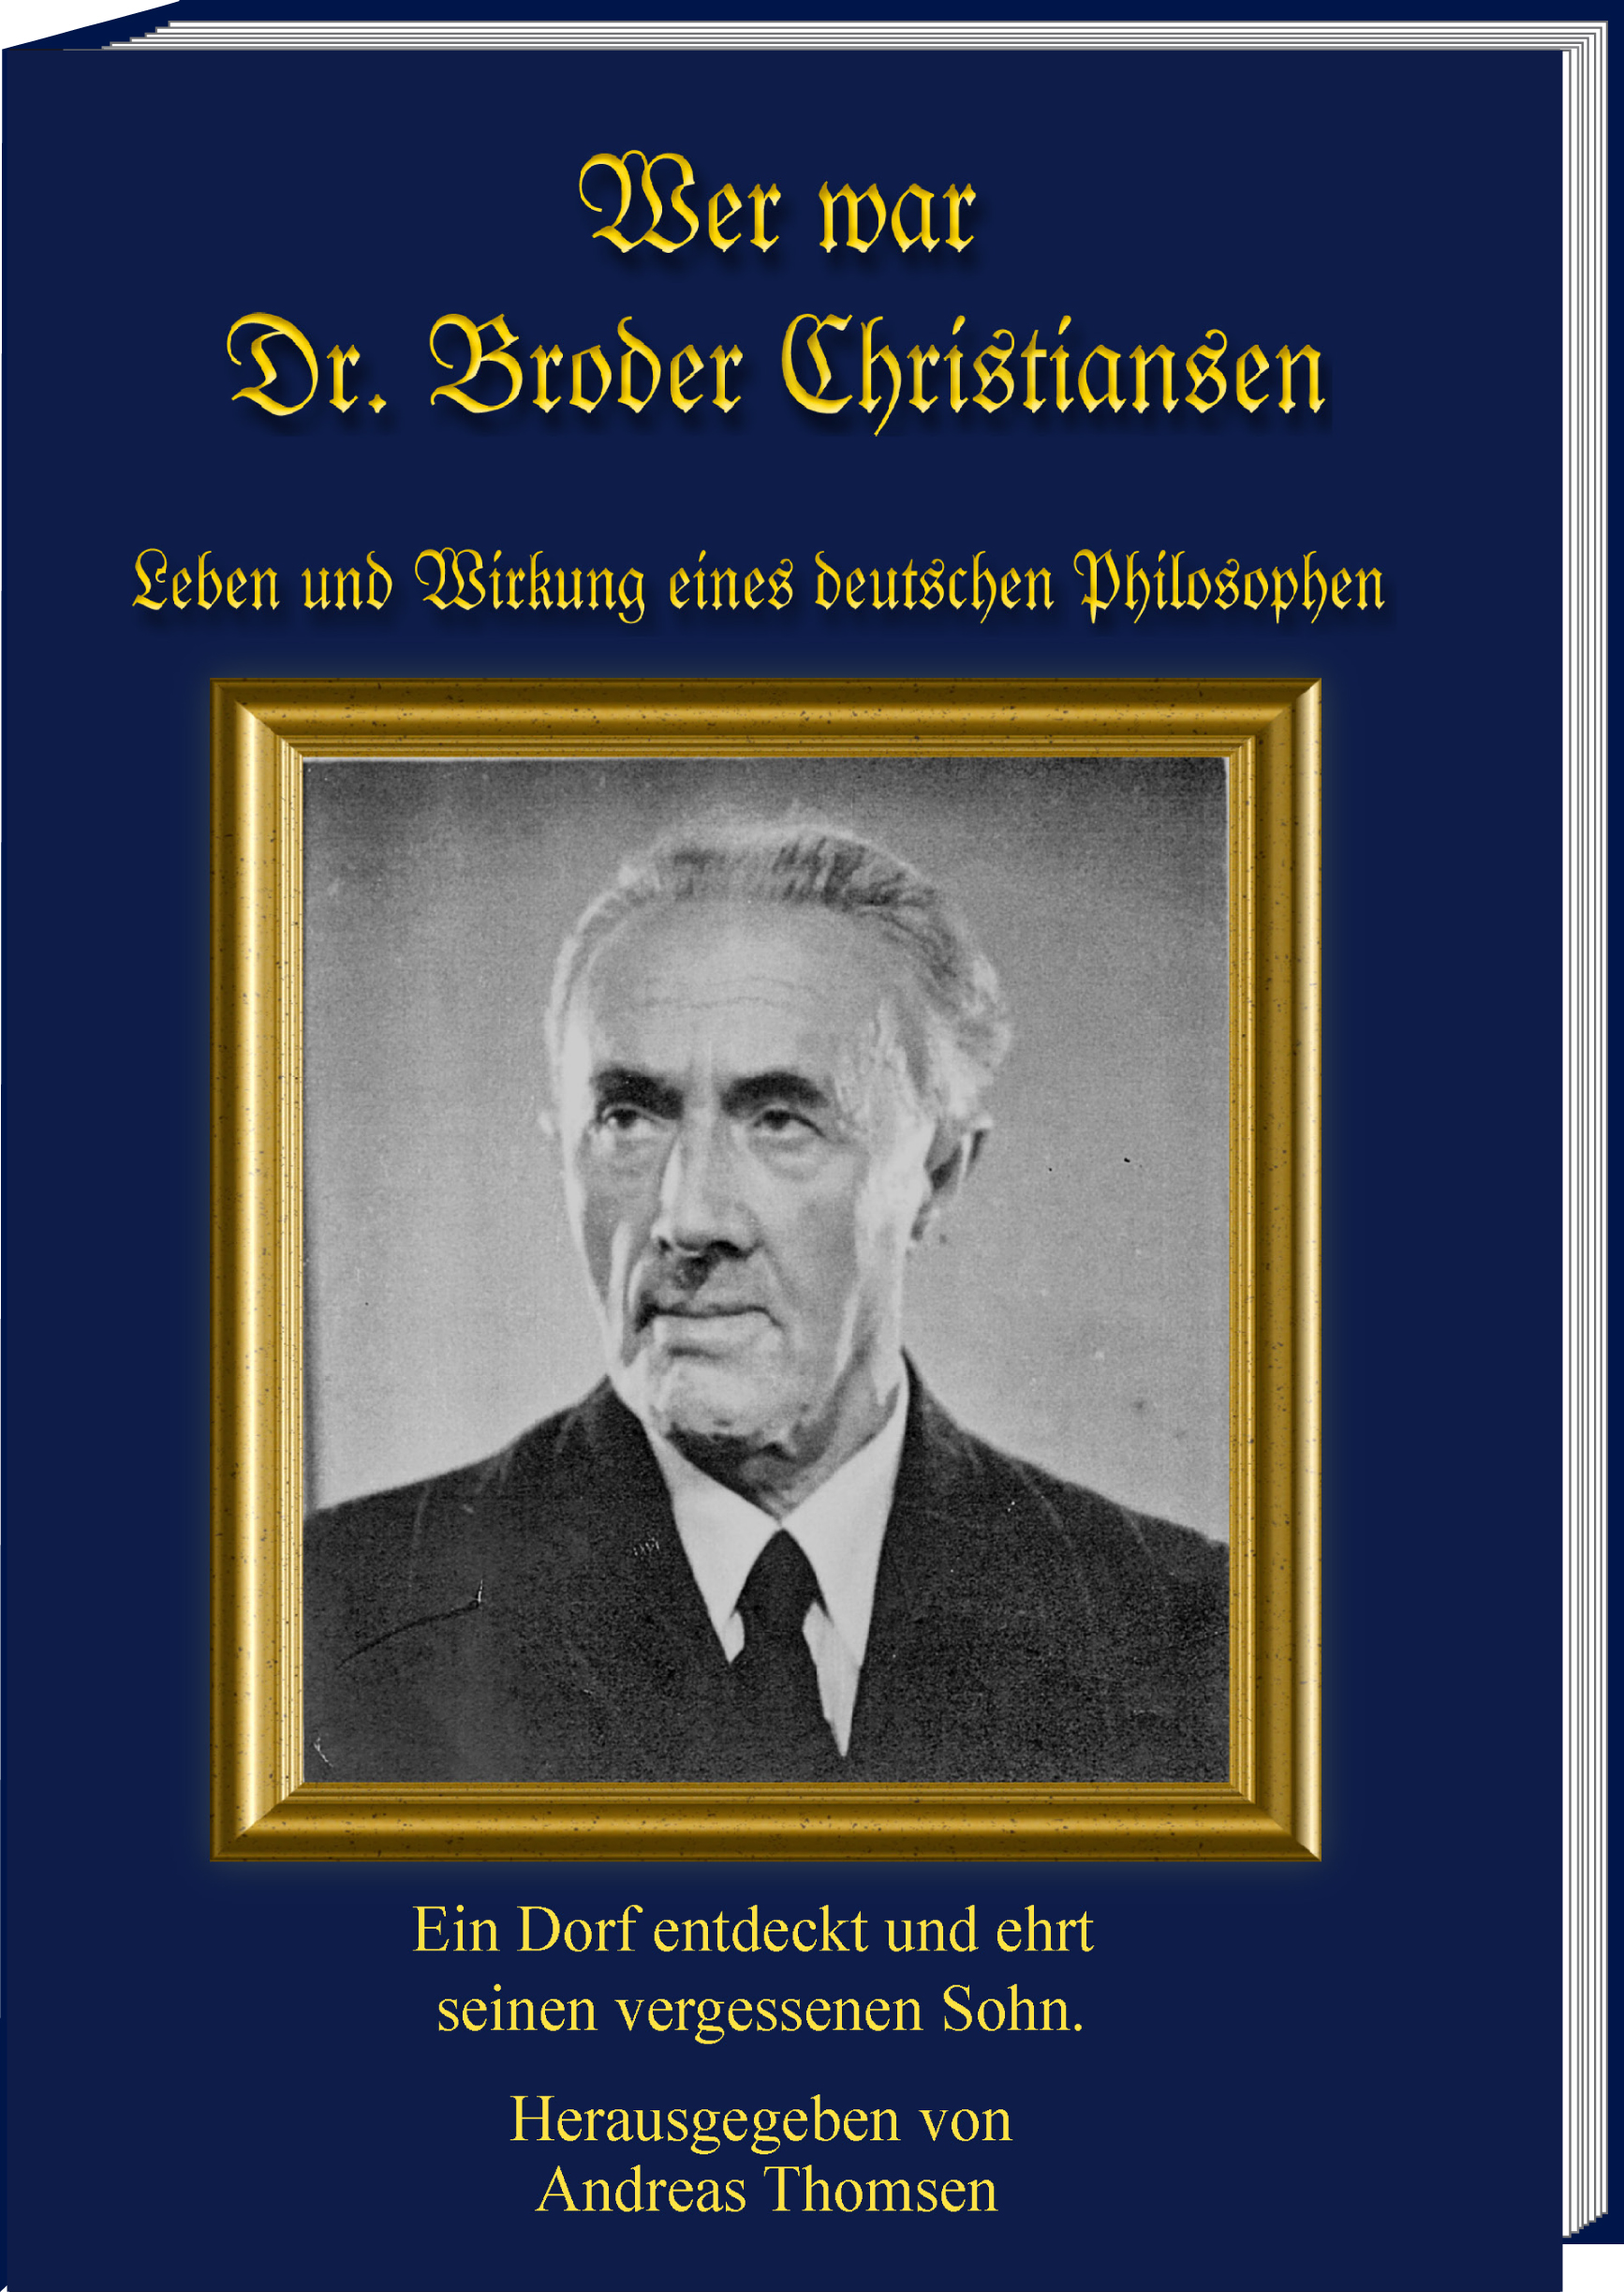 Wer war Dr. Broder Christiansen<br> Leben und Wirkung eines deutschen Philosophen